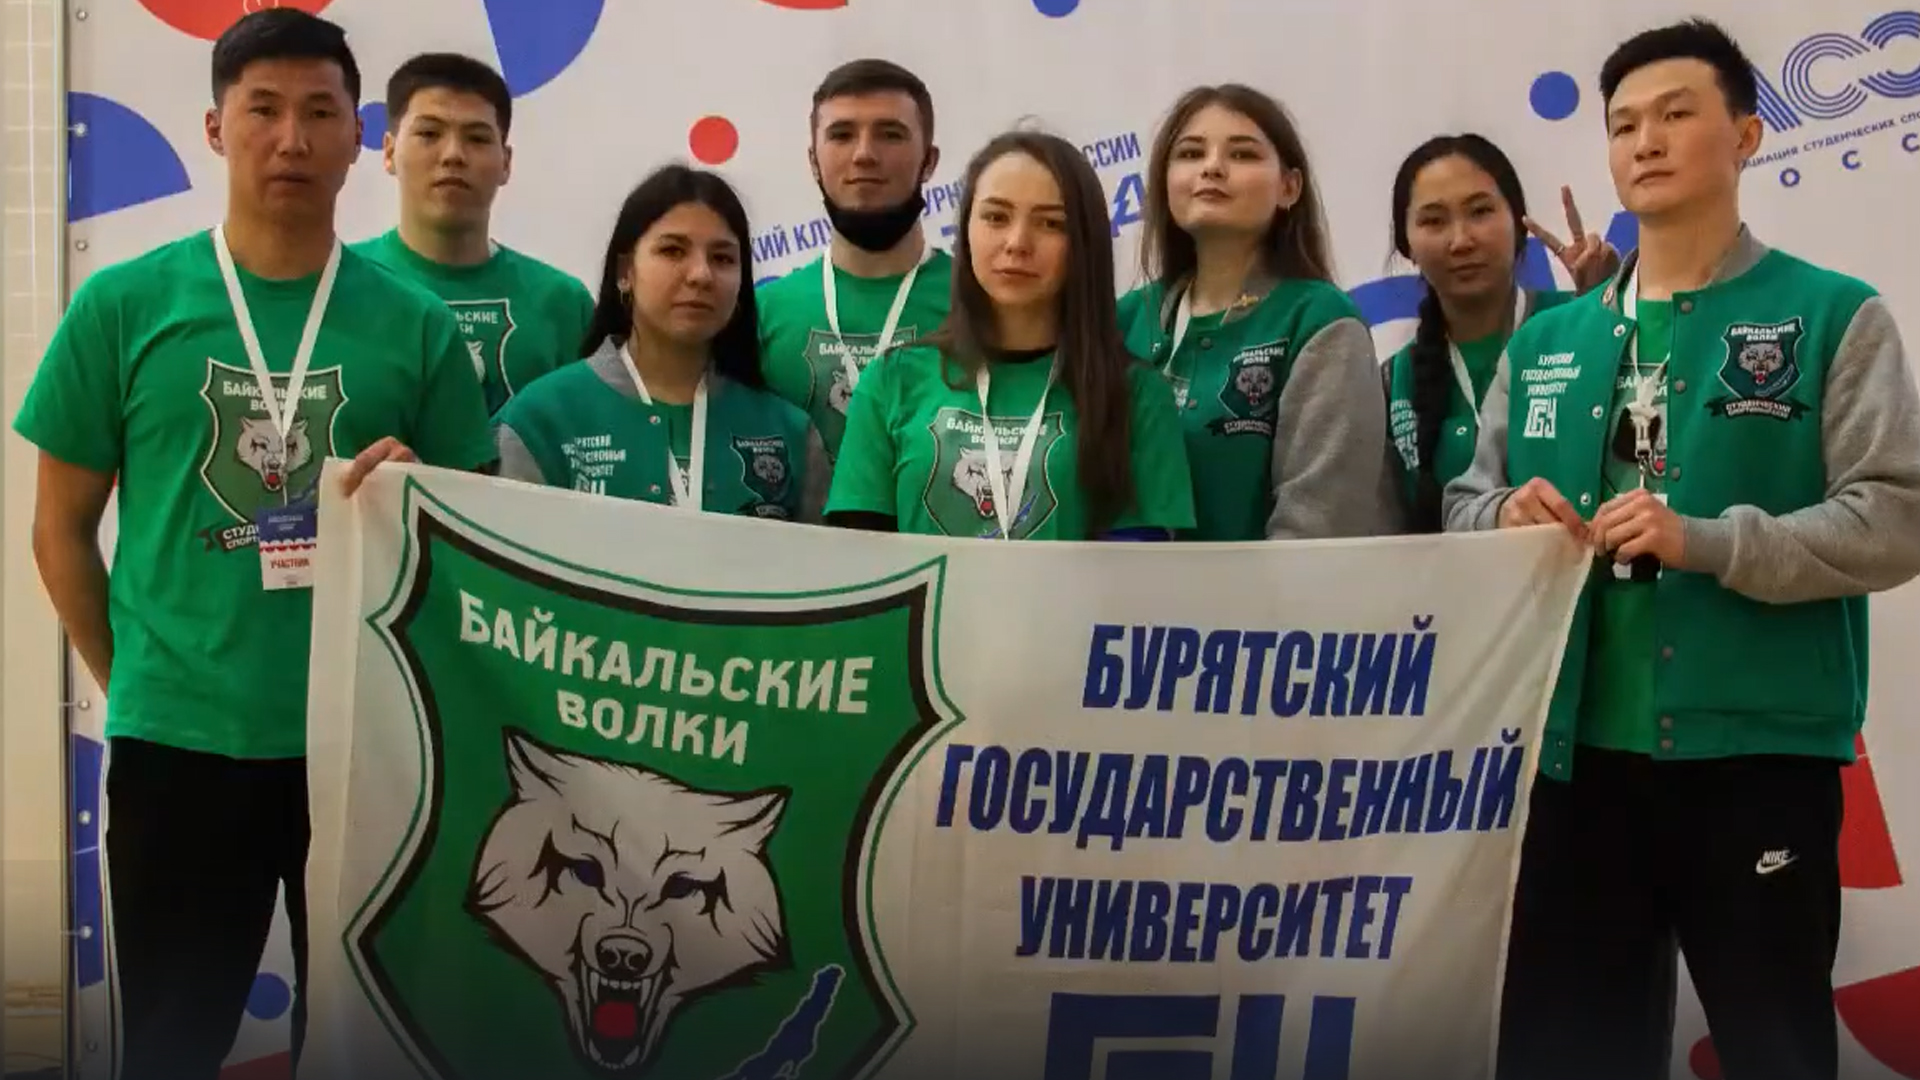 22 ноября 2015 ССК «Байкальские волки» вступили в Ассоциацию студенческих спортивных клубов России